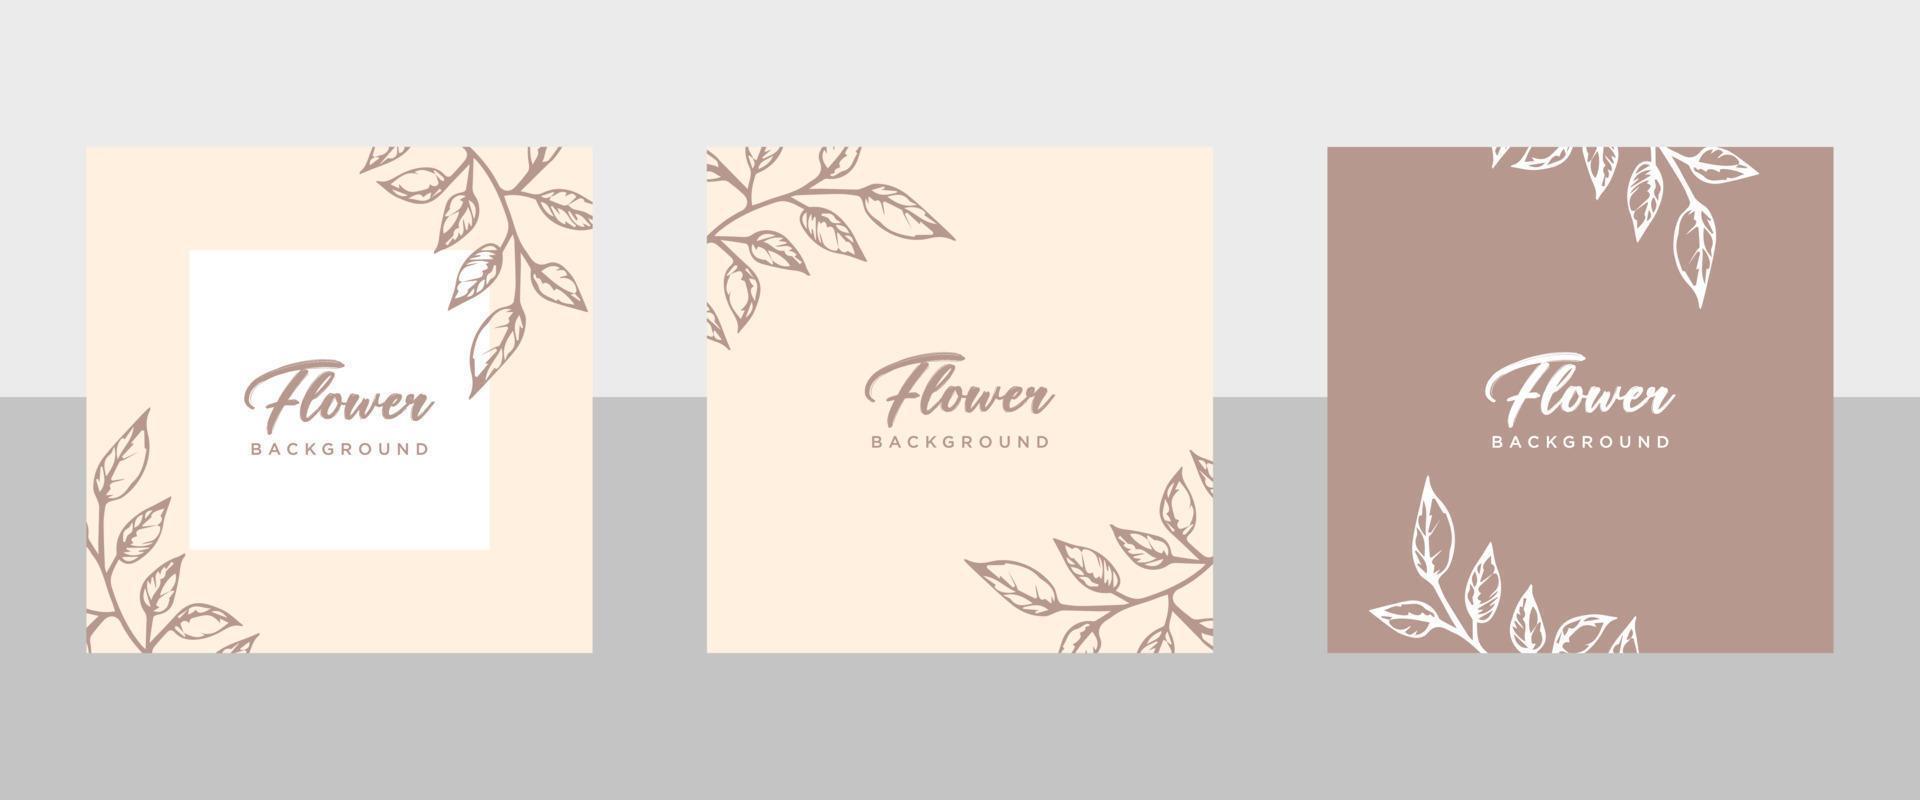 neutral blommig bakgrund i enkel färger. vektor gräns med hand dragen blommor i linje stil för social media posta, inbjudan, hälsning kort, branding design, baner, affisch, reklam